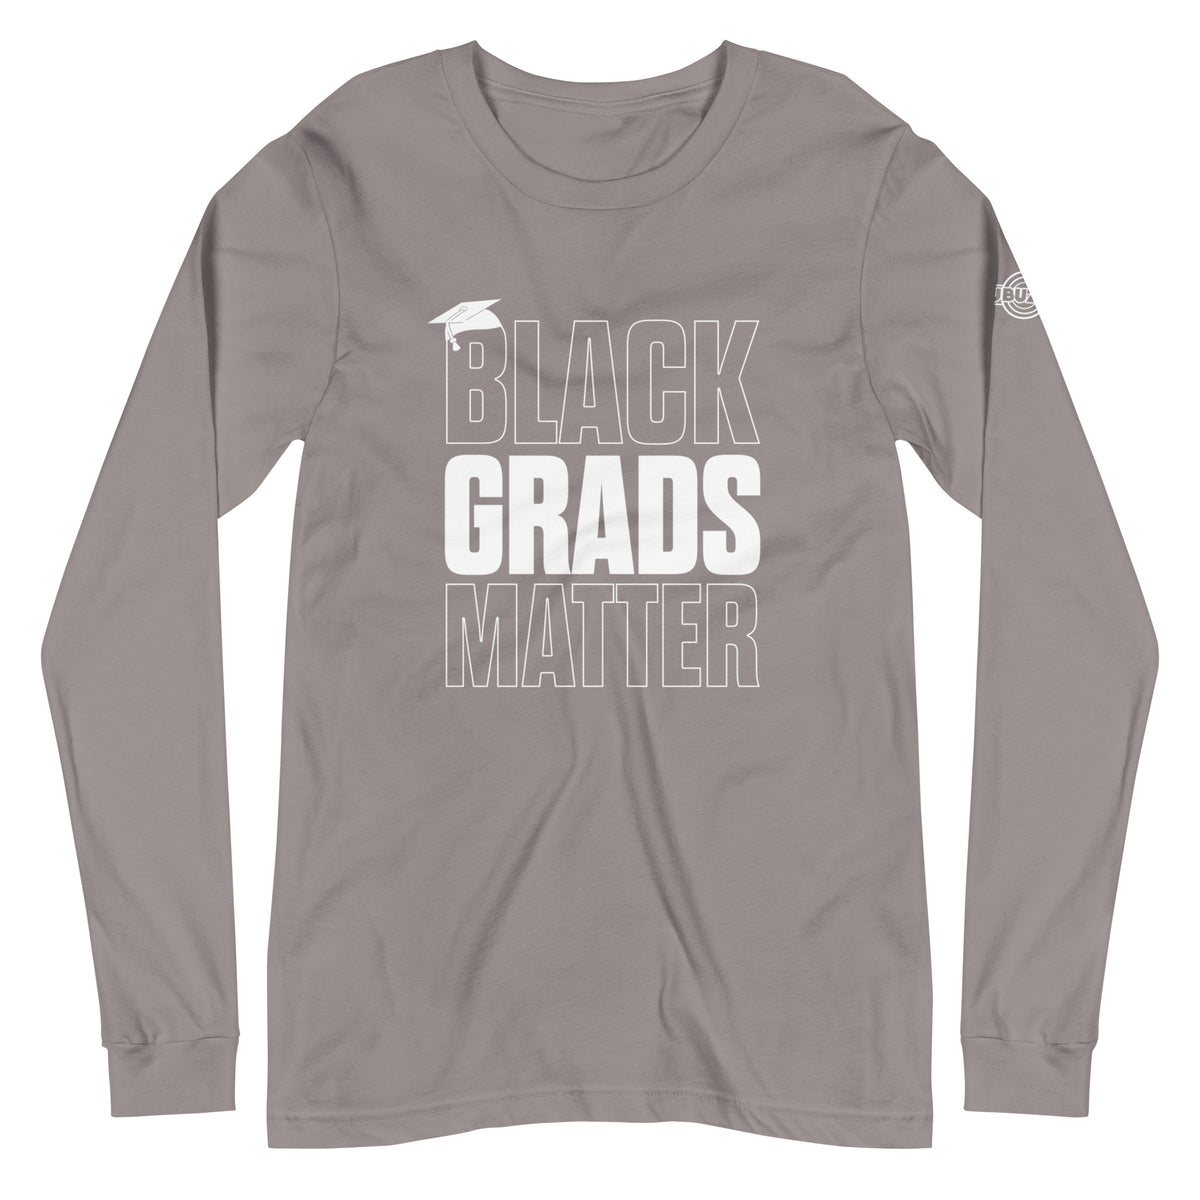 Black Grads Matter Unisex Long Sleeve Tee - HBCU Buzz Shop